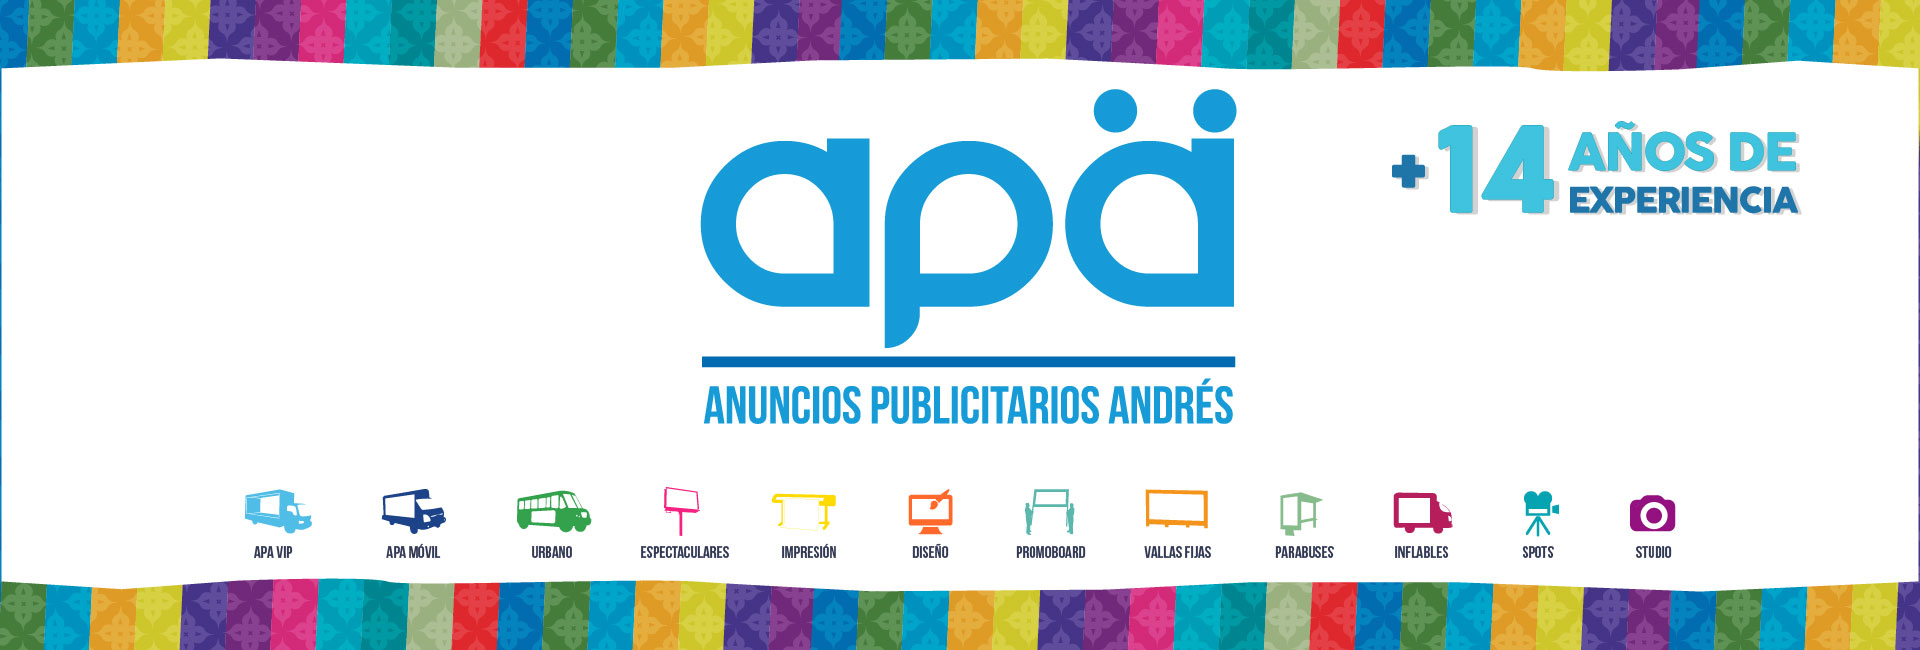 Anuncios Publicitarios Andrés